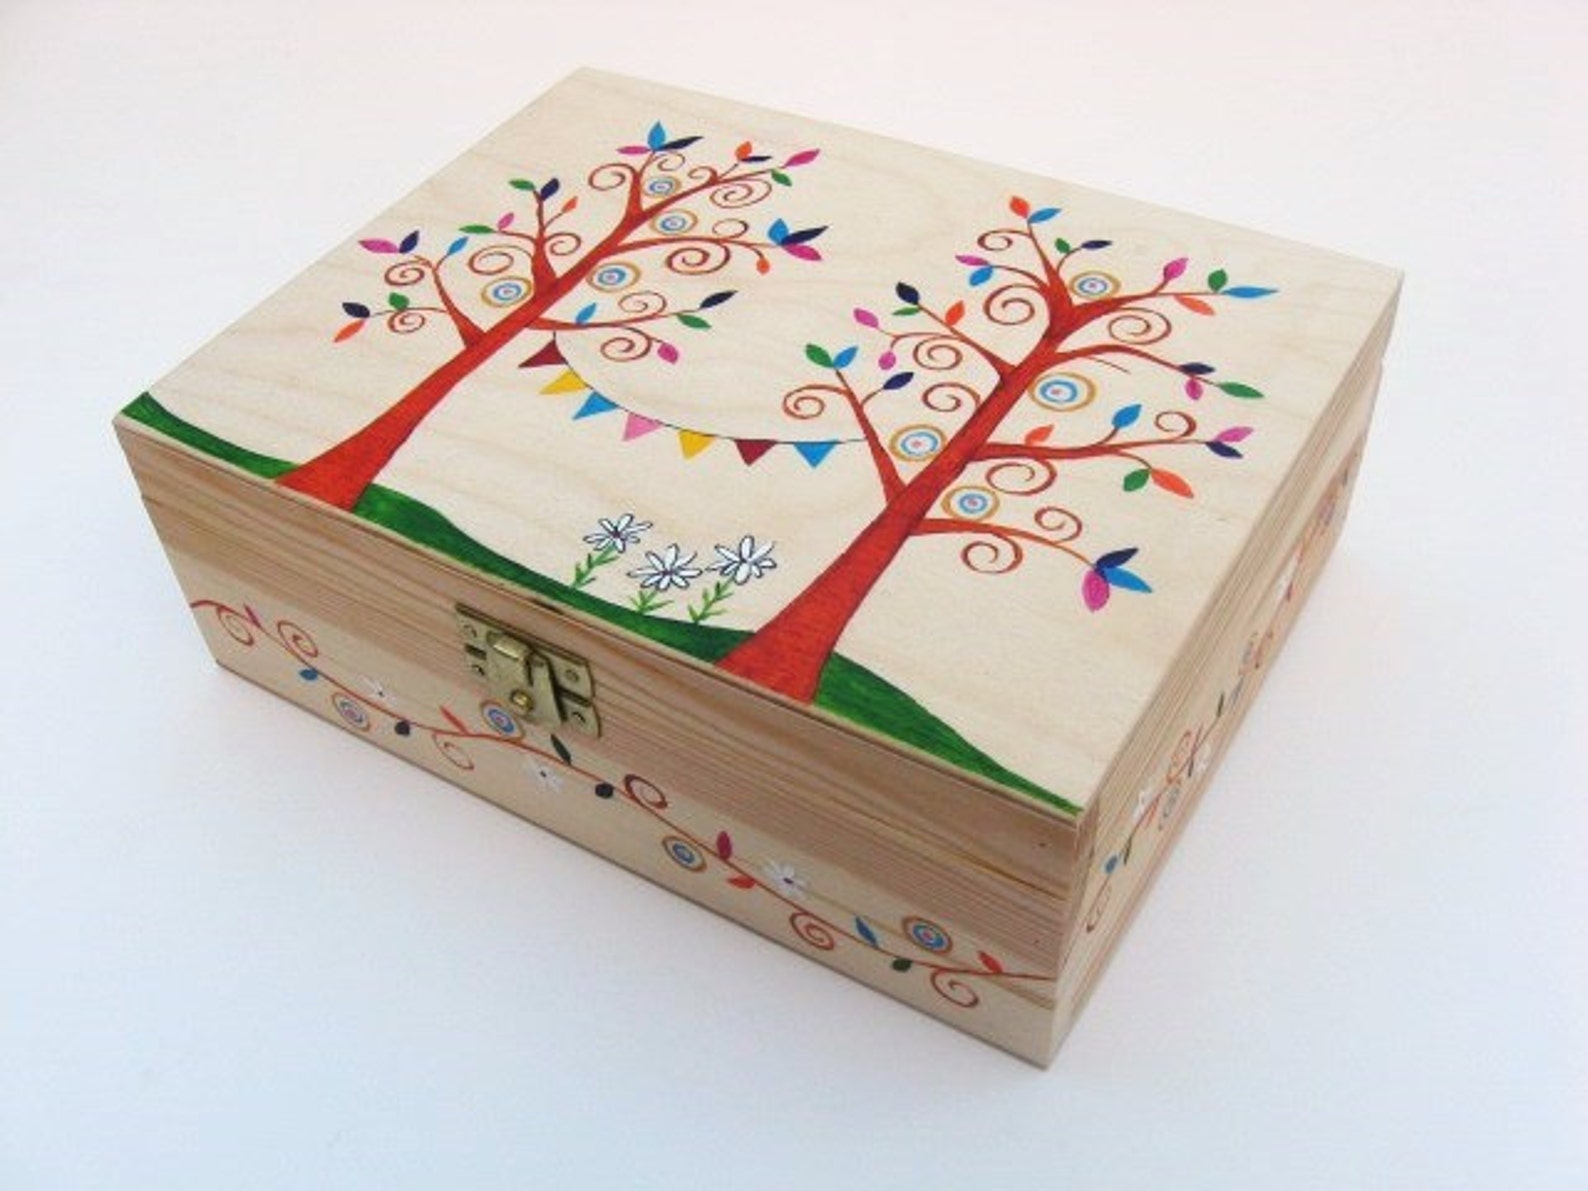 Painting box. Шкатулка дерево 26287 роспись. Расписные коробки. Расписываем деревянную коробочку. Разукрасить деревянную шкатулку.